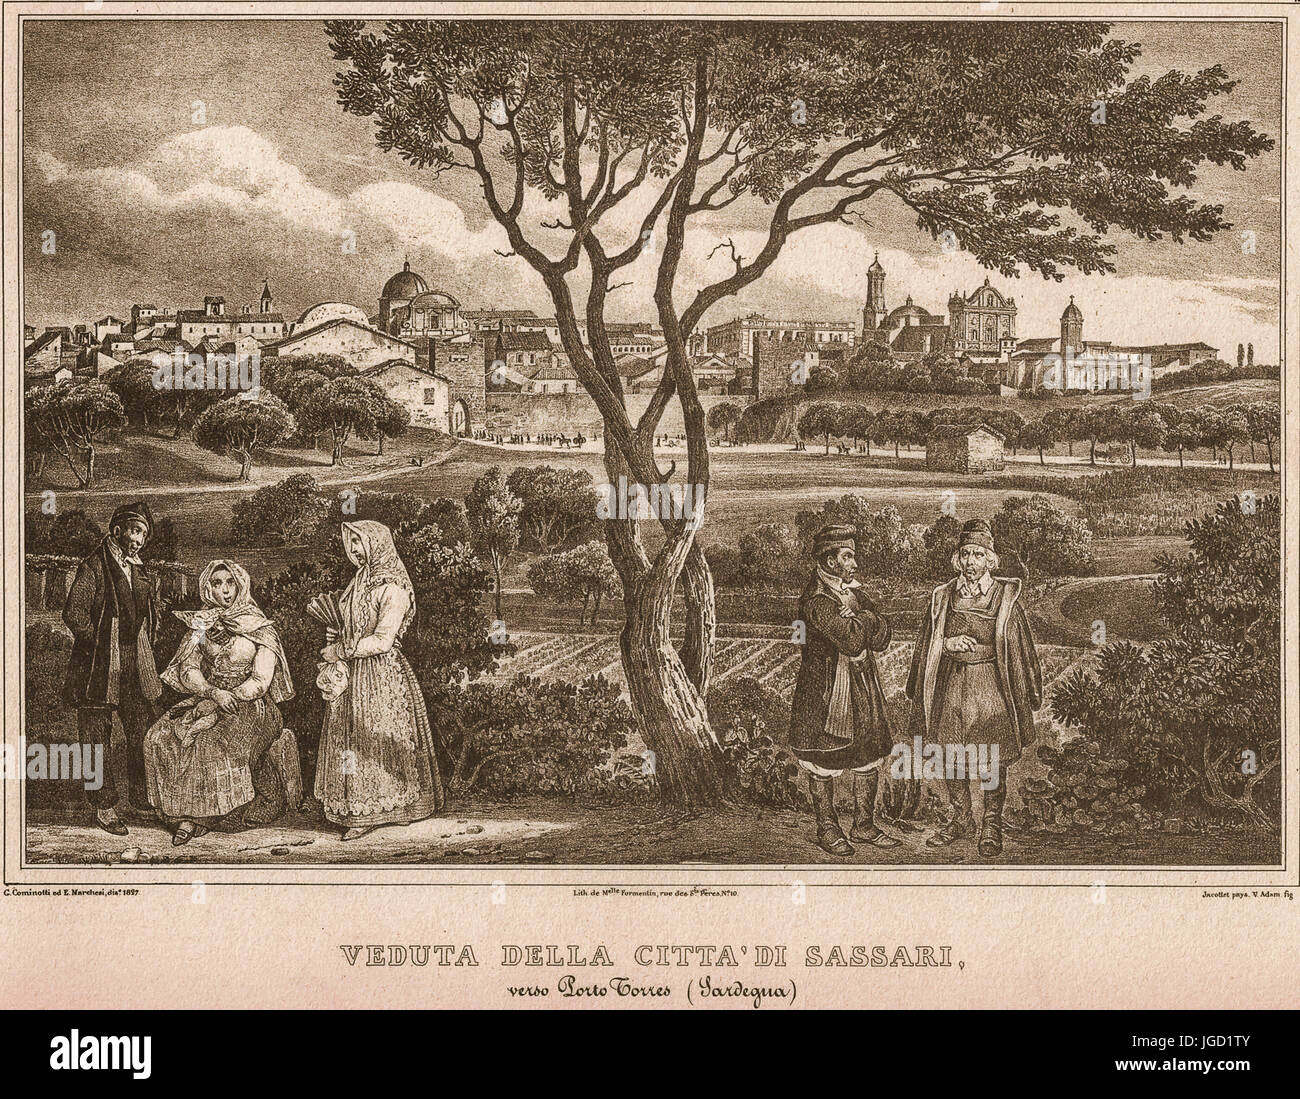 Italia Cerdeña Vista de Sassari, en una primera impresión de la antigua del siglo XIX Foto de stock